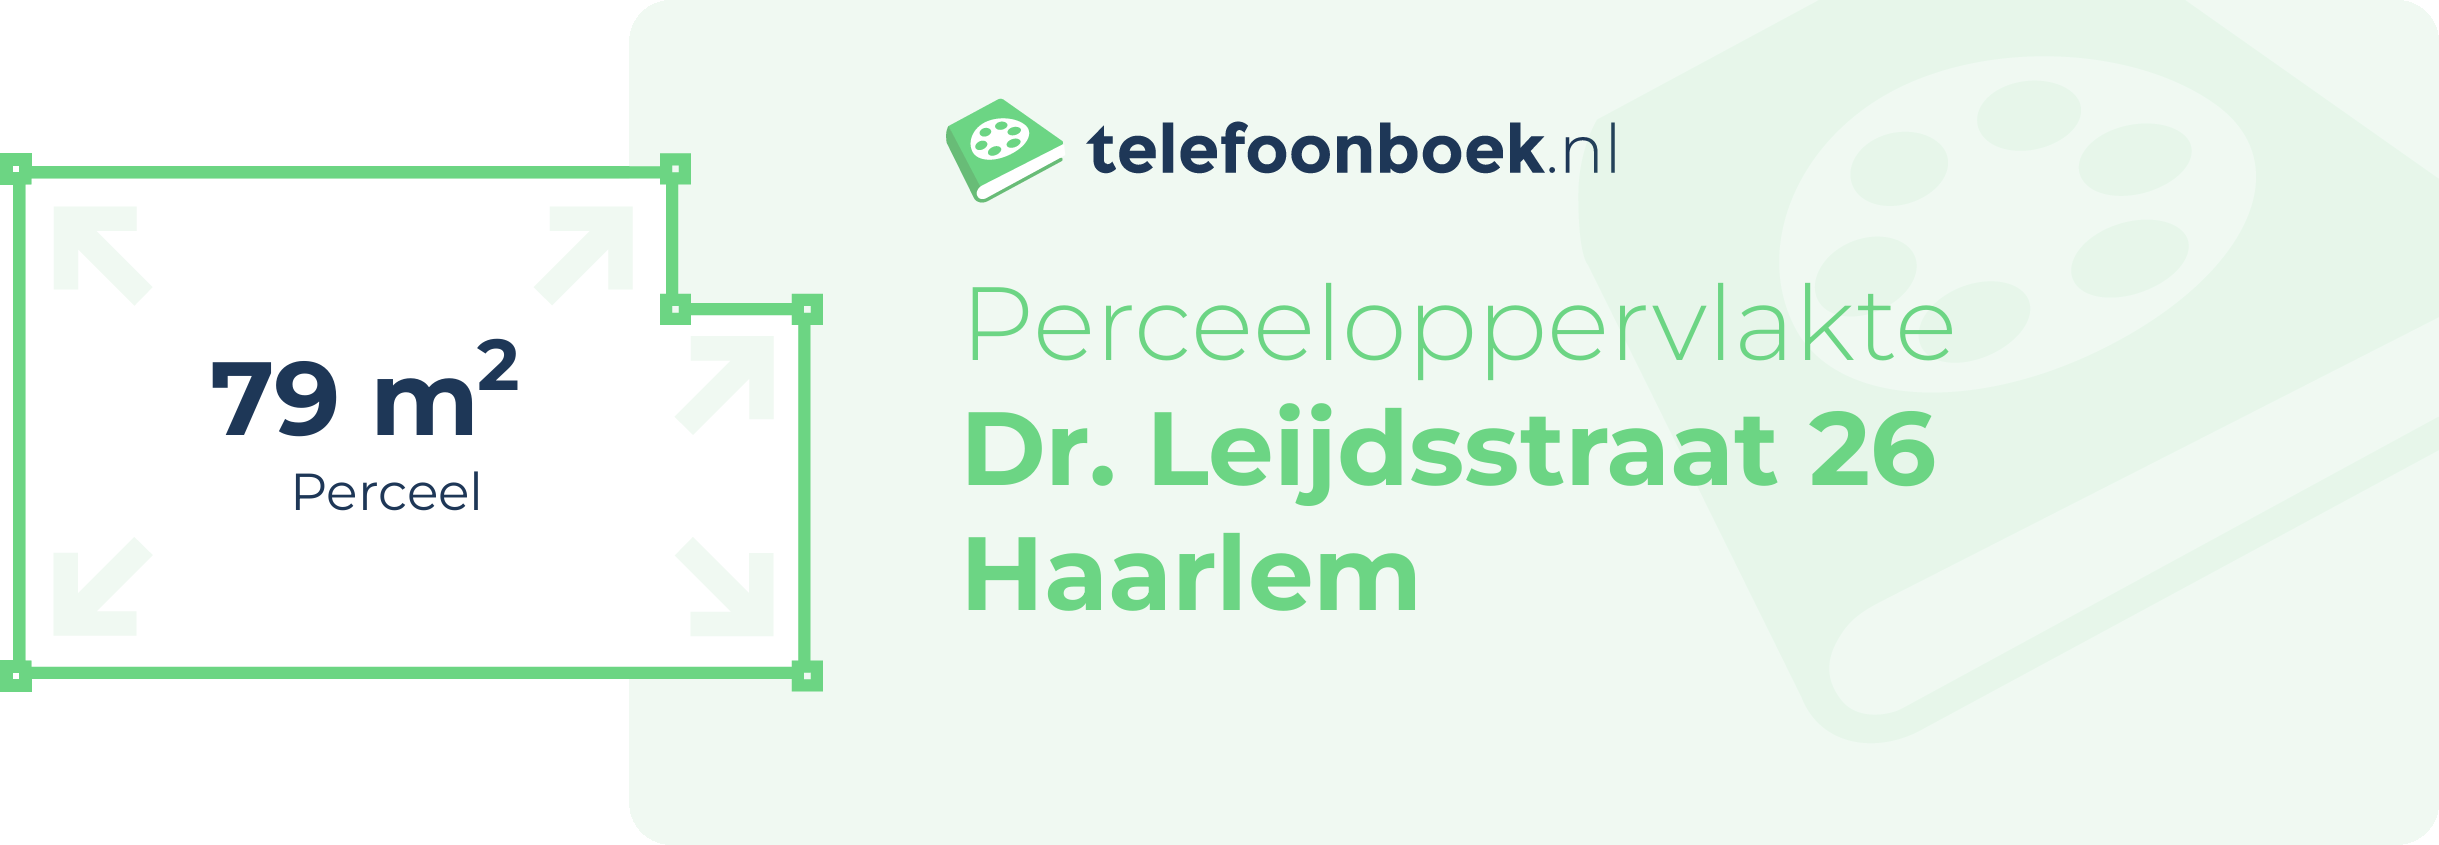 Perceeloppervlakte Dr. Leijdsstraat 26 Haarlem